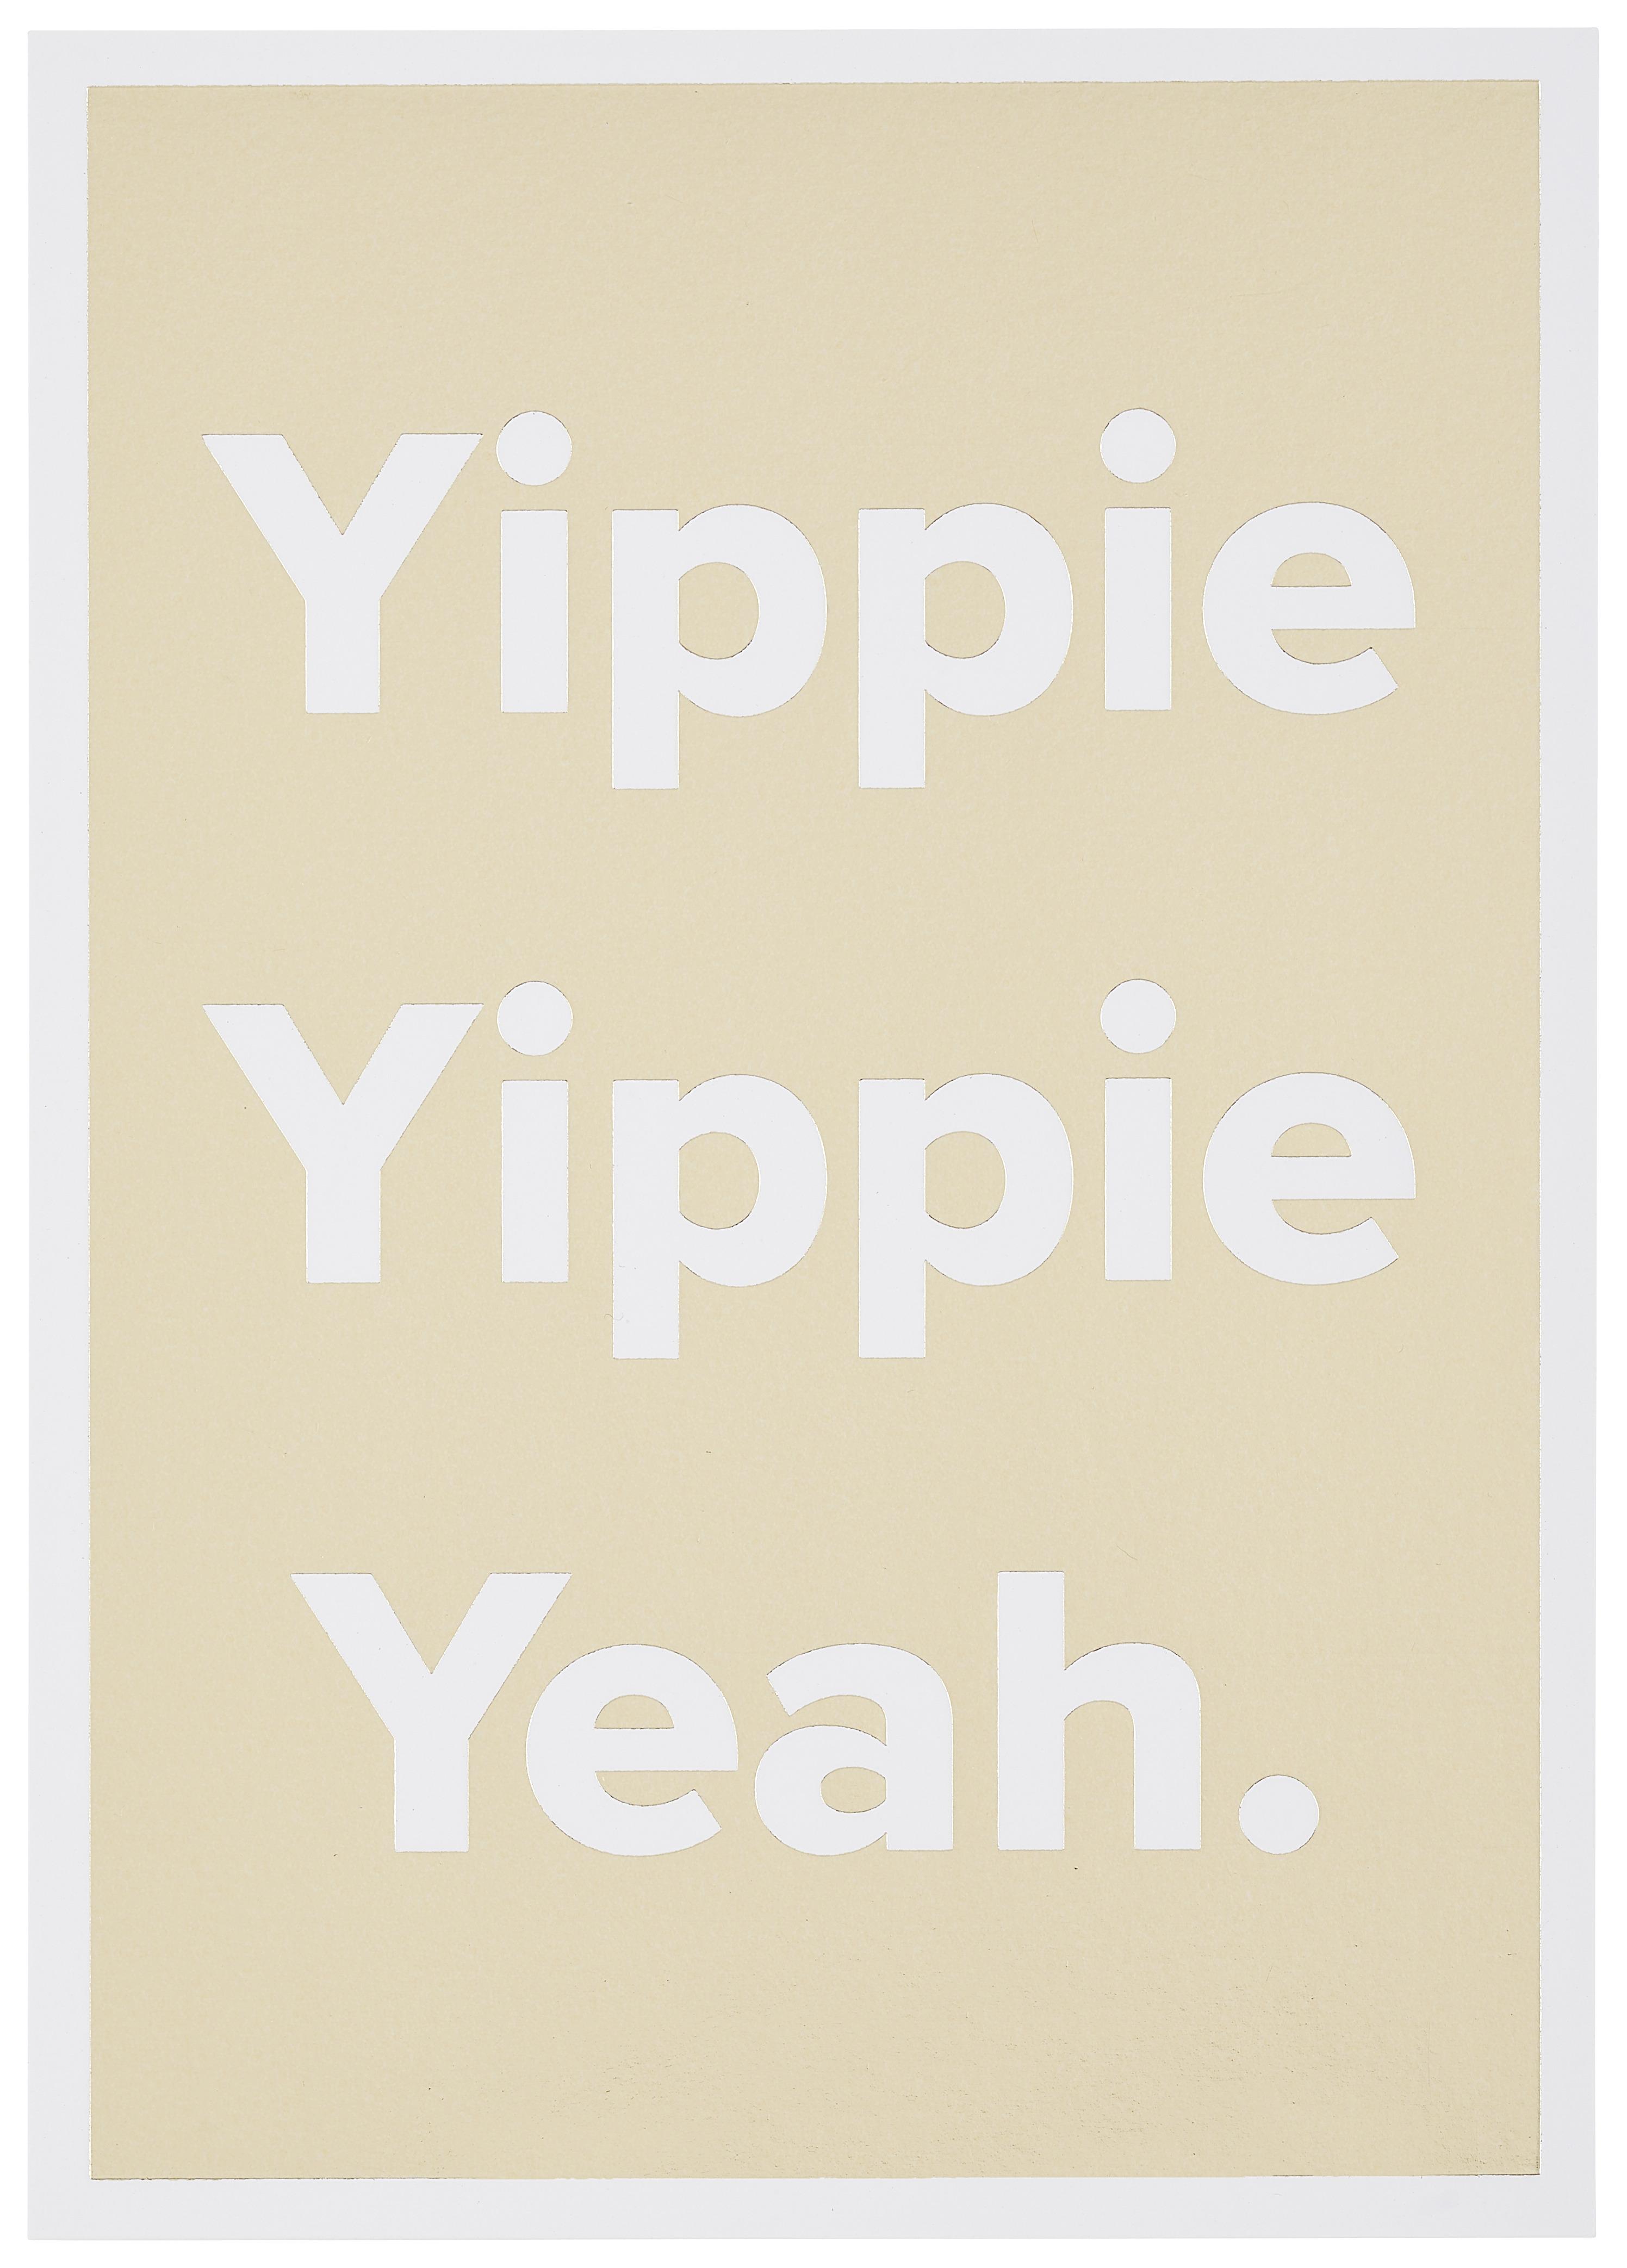 Postkarte Yippie Yippie Yeah! - Goldfarben/Weiß, MODERN, Papier (10,5/14,8cm)